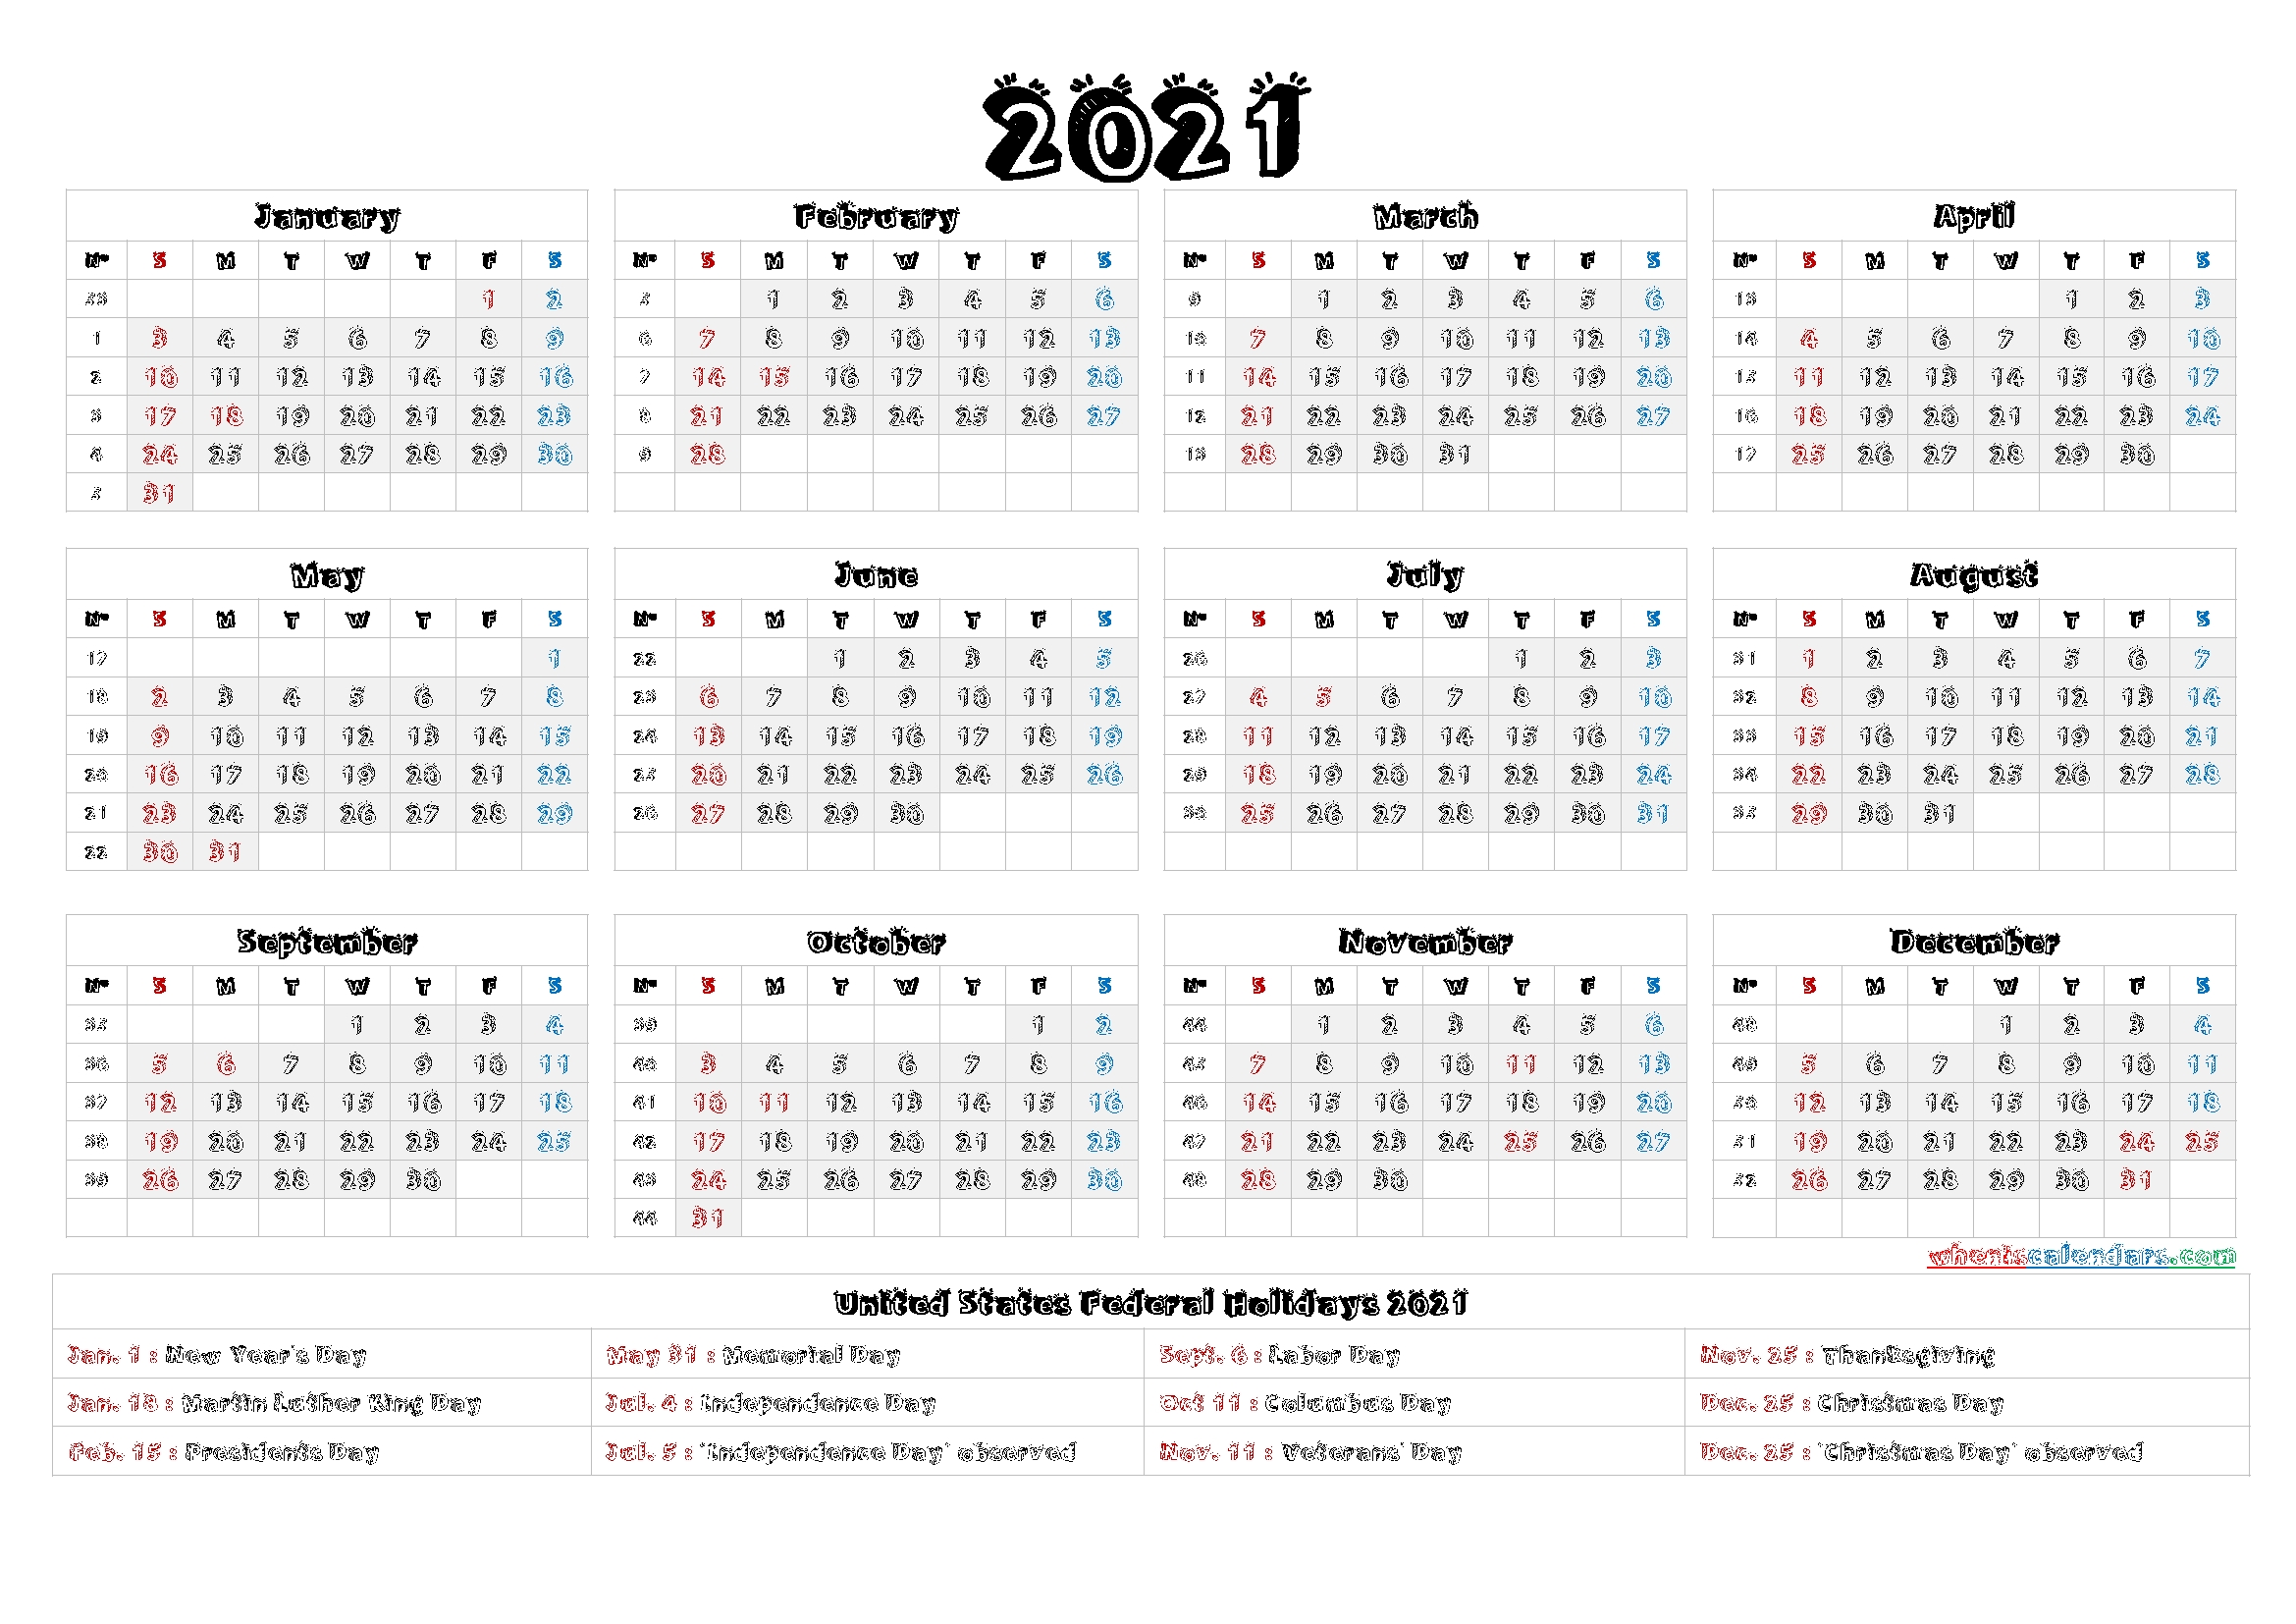 2021 Calendar With Week Numbers Printable – 6 Templates